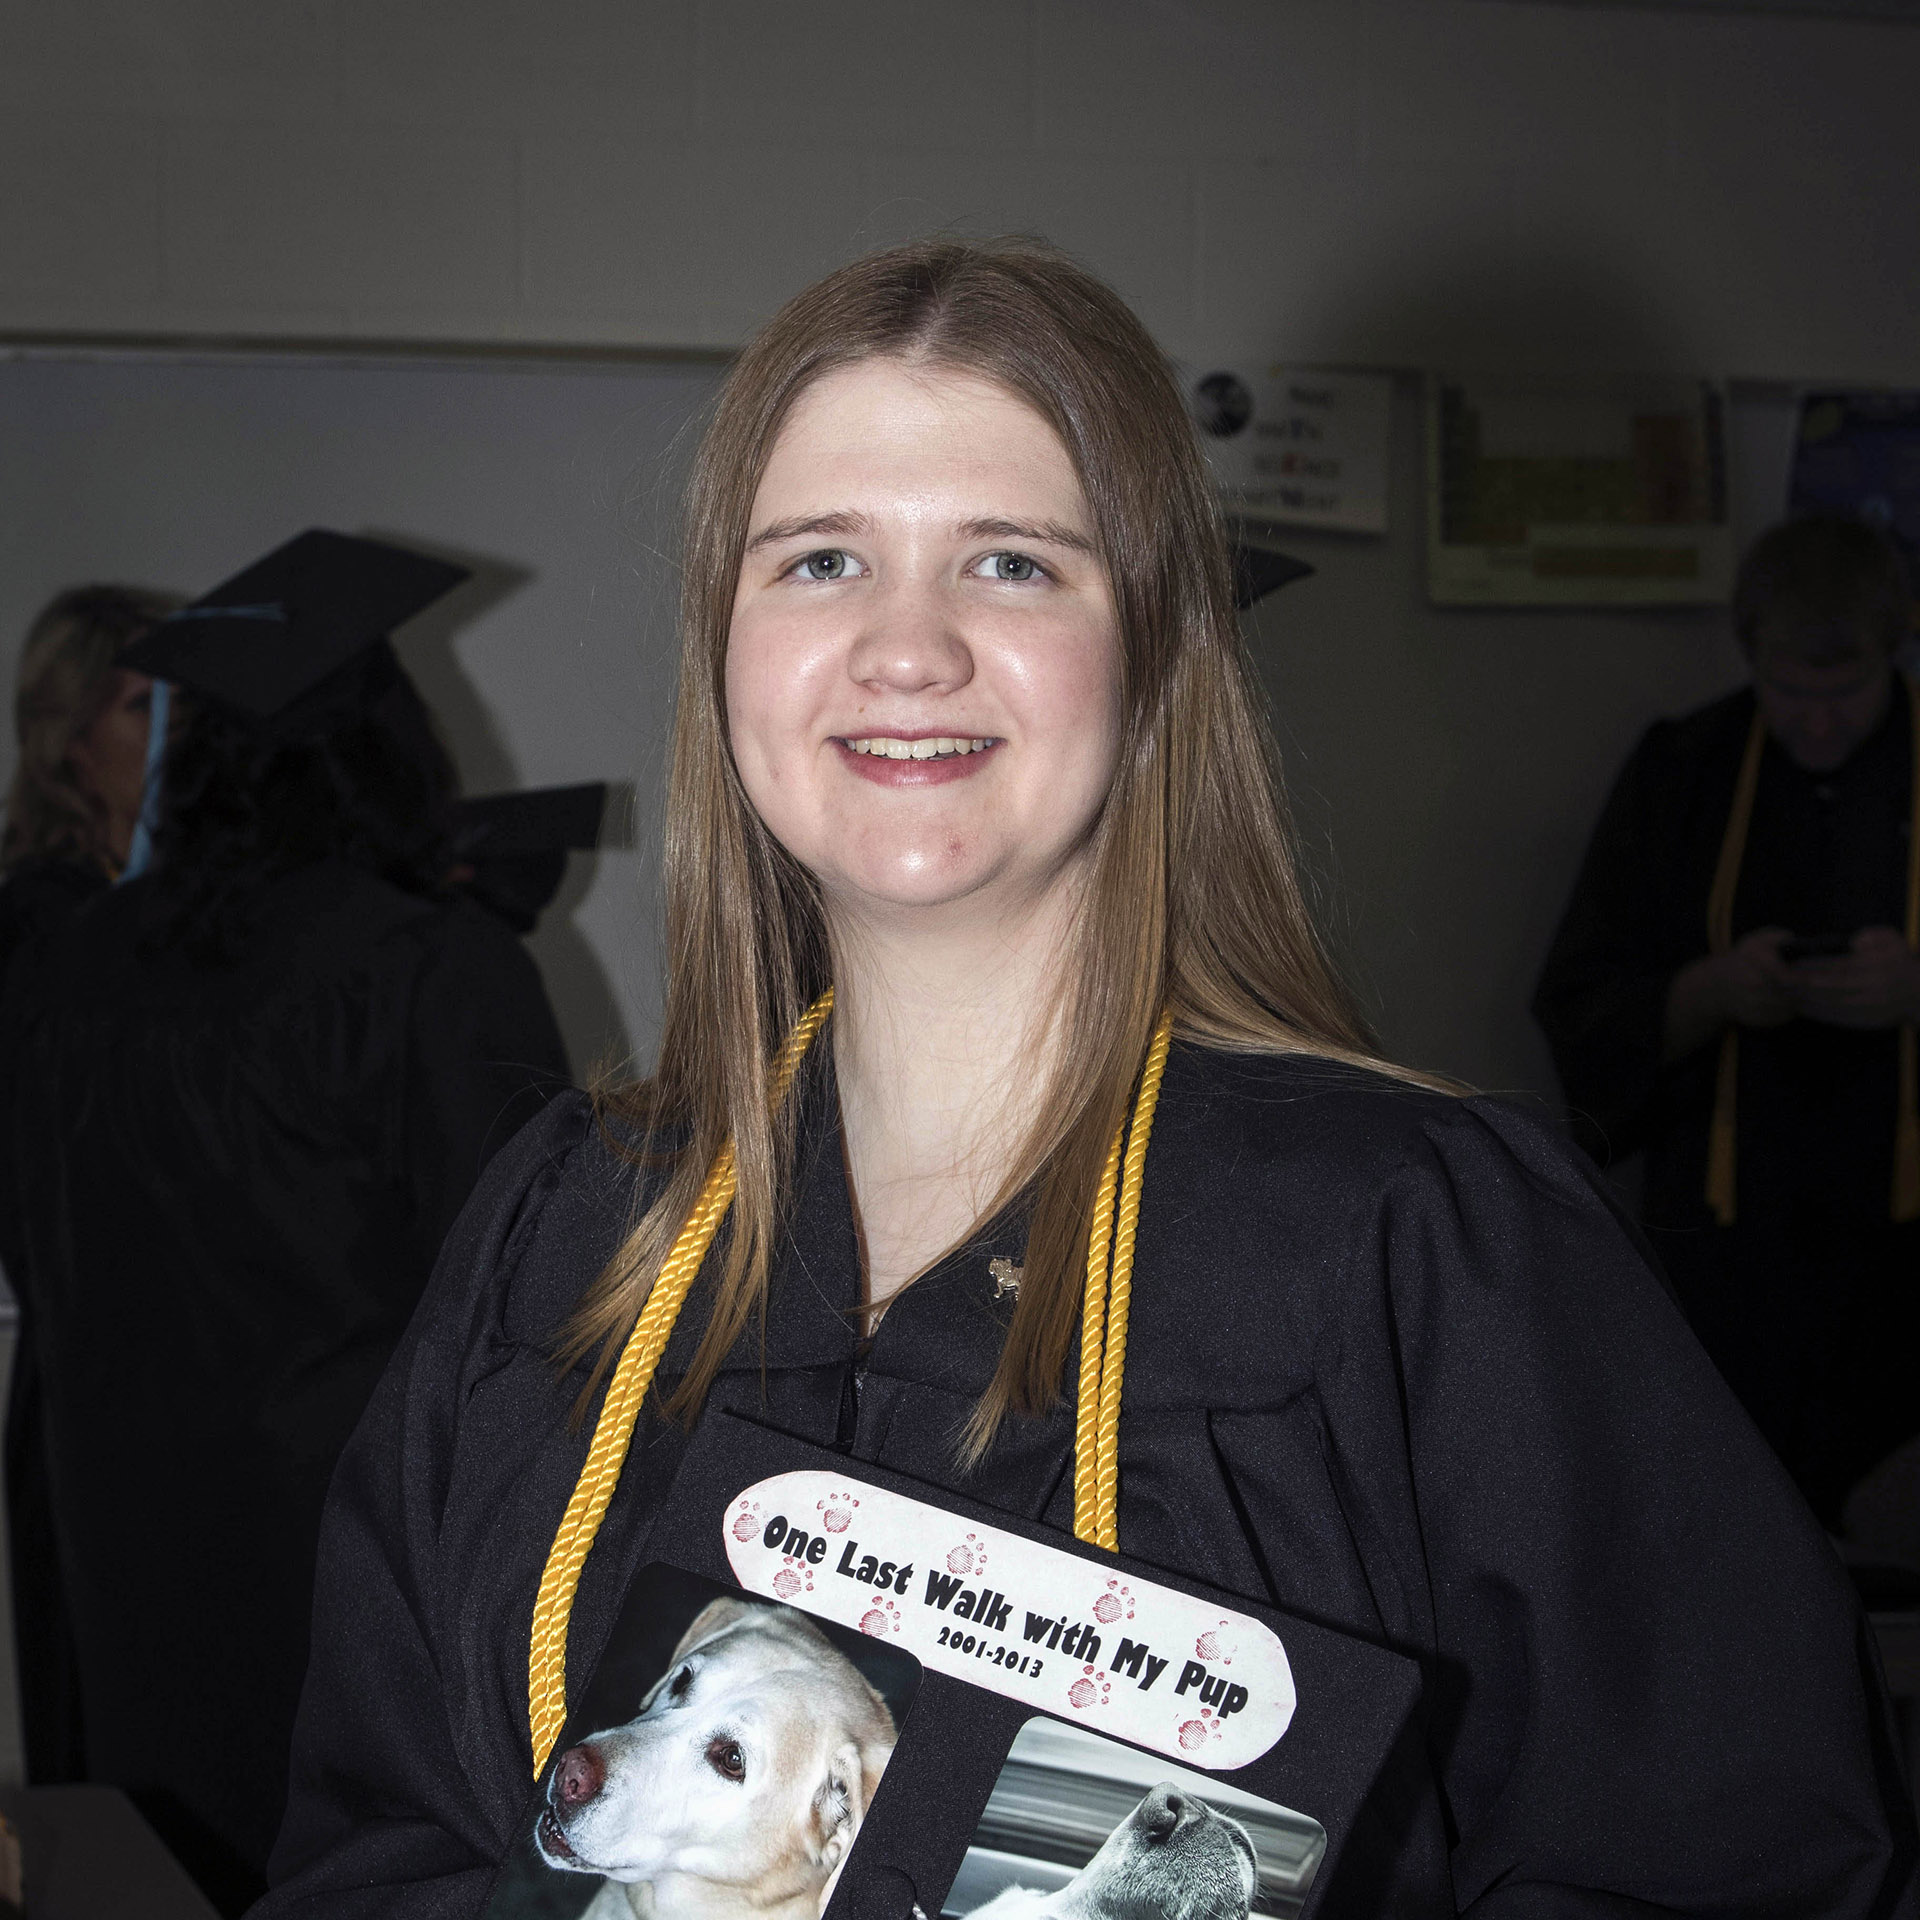 Graduated from Ferris through SMC 2015